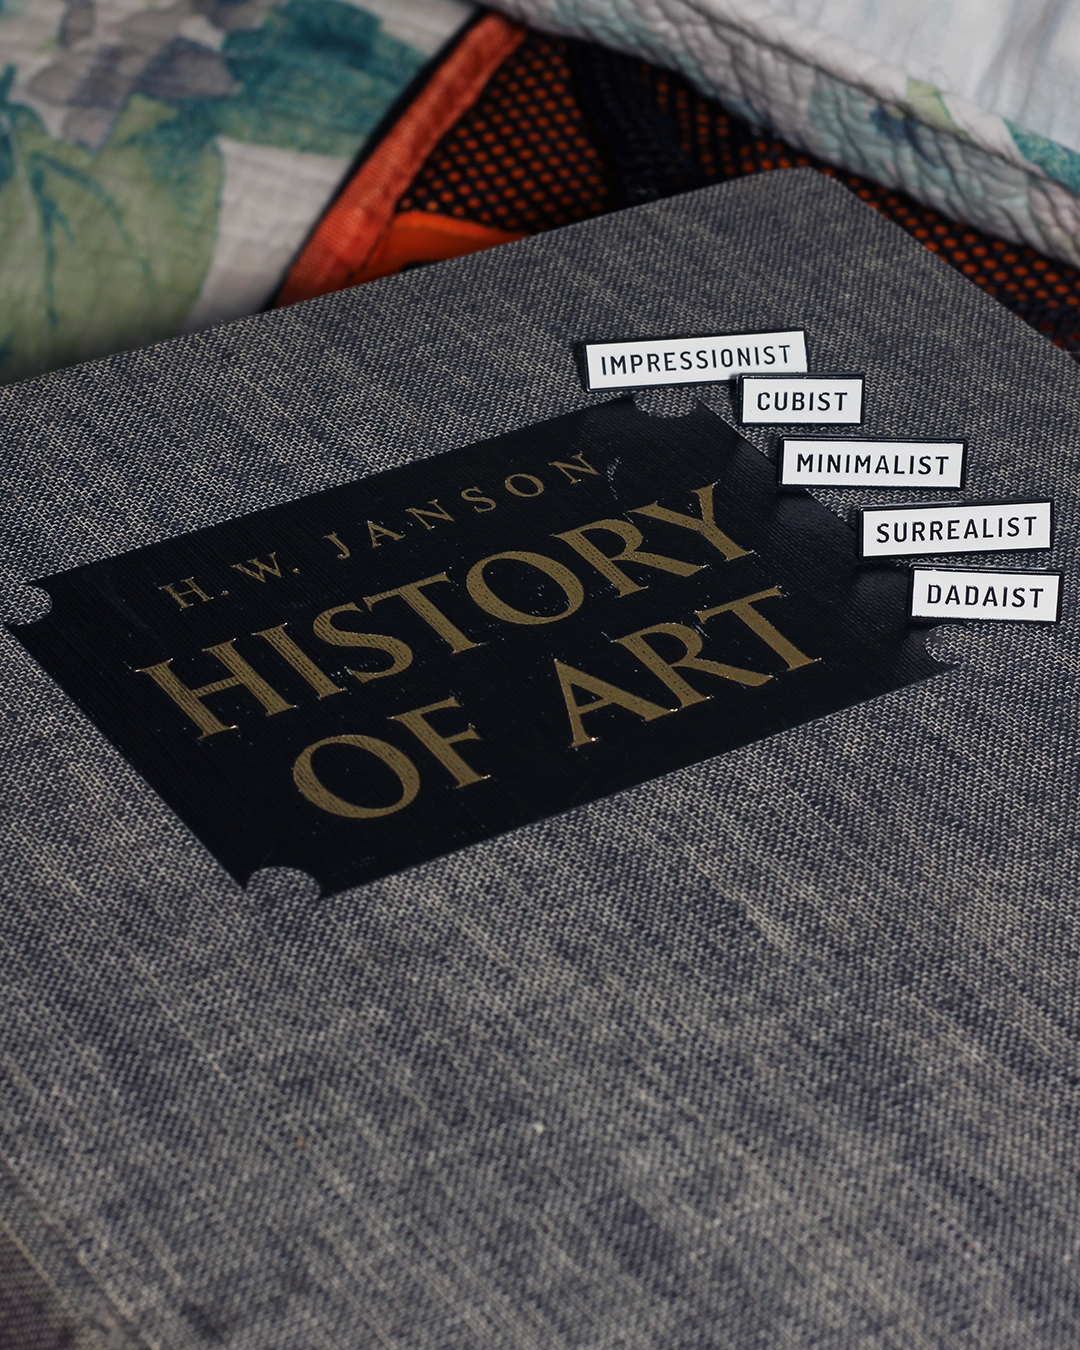 art history pins